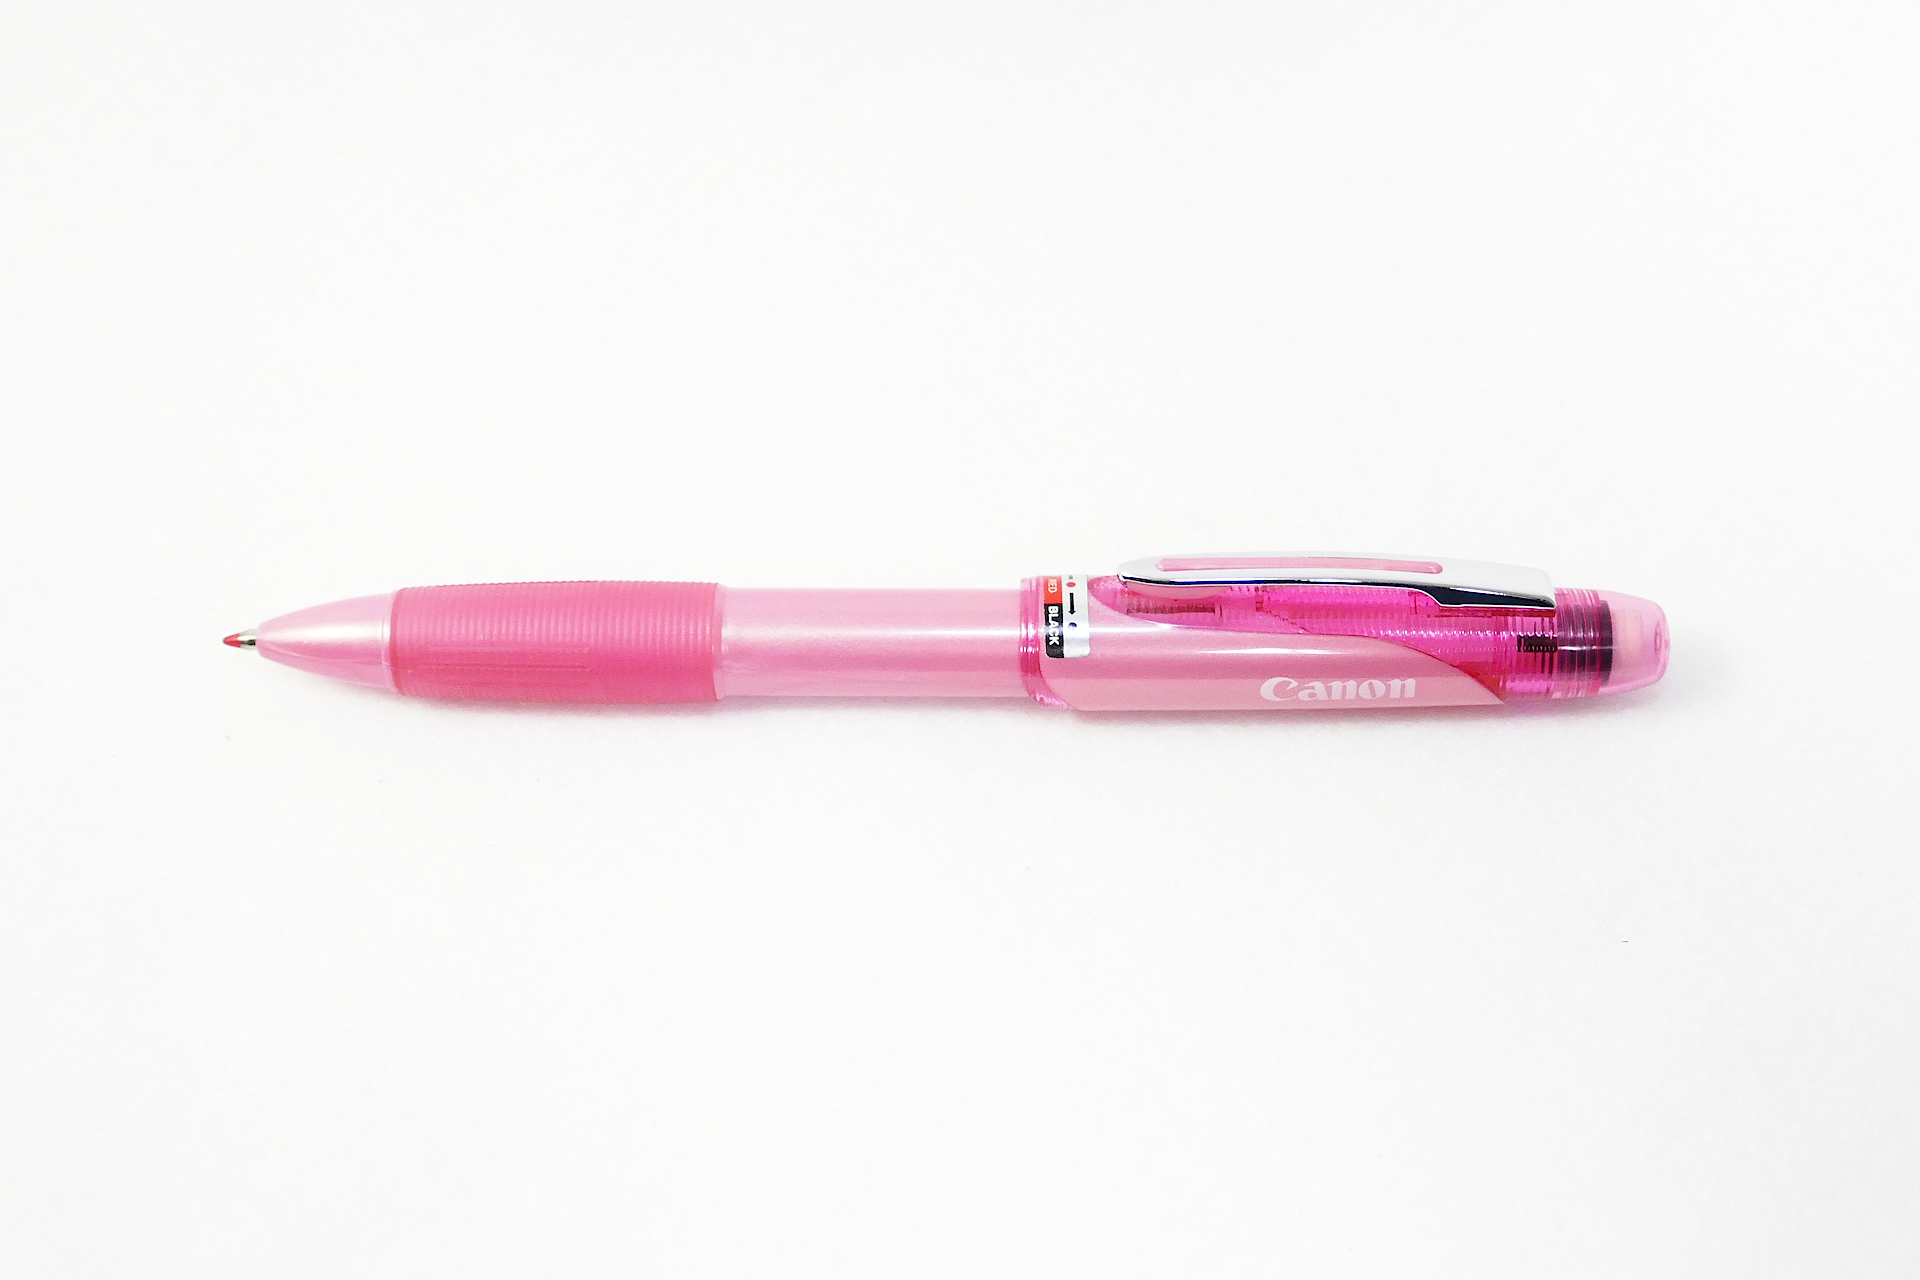 ピンク色のデザインの多機能ペンを撮影した写真。 メカニカル ペンシルと、赤色と黒色のインクのボールポイント ペンを切り替えられるようになっている。 ペン先を下向きにして置かれている。